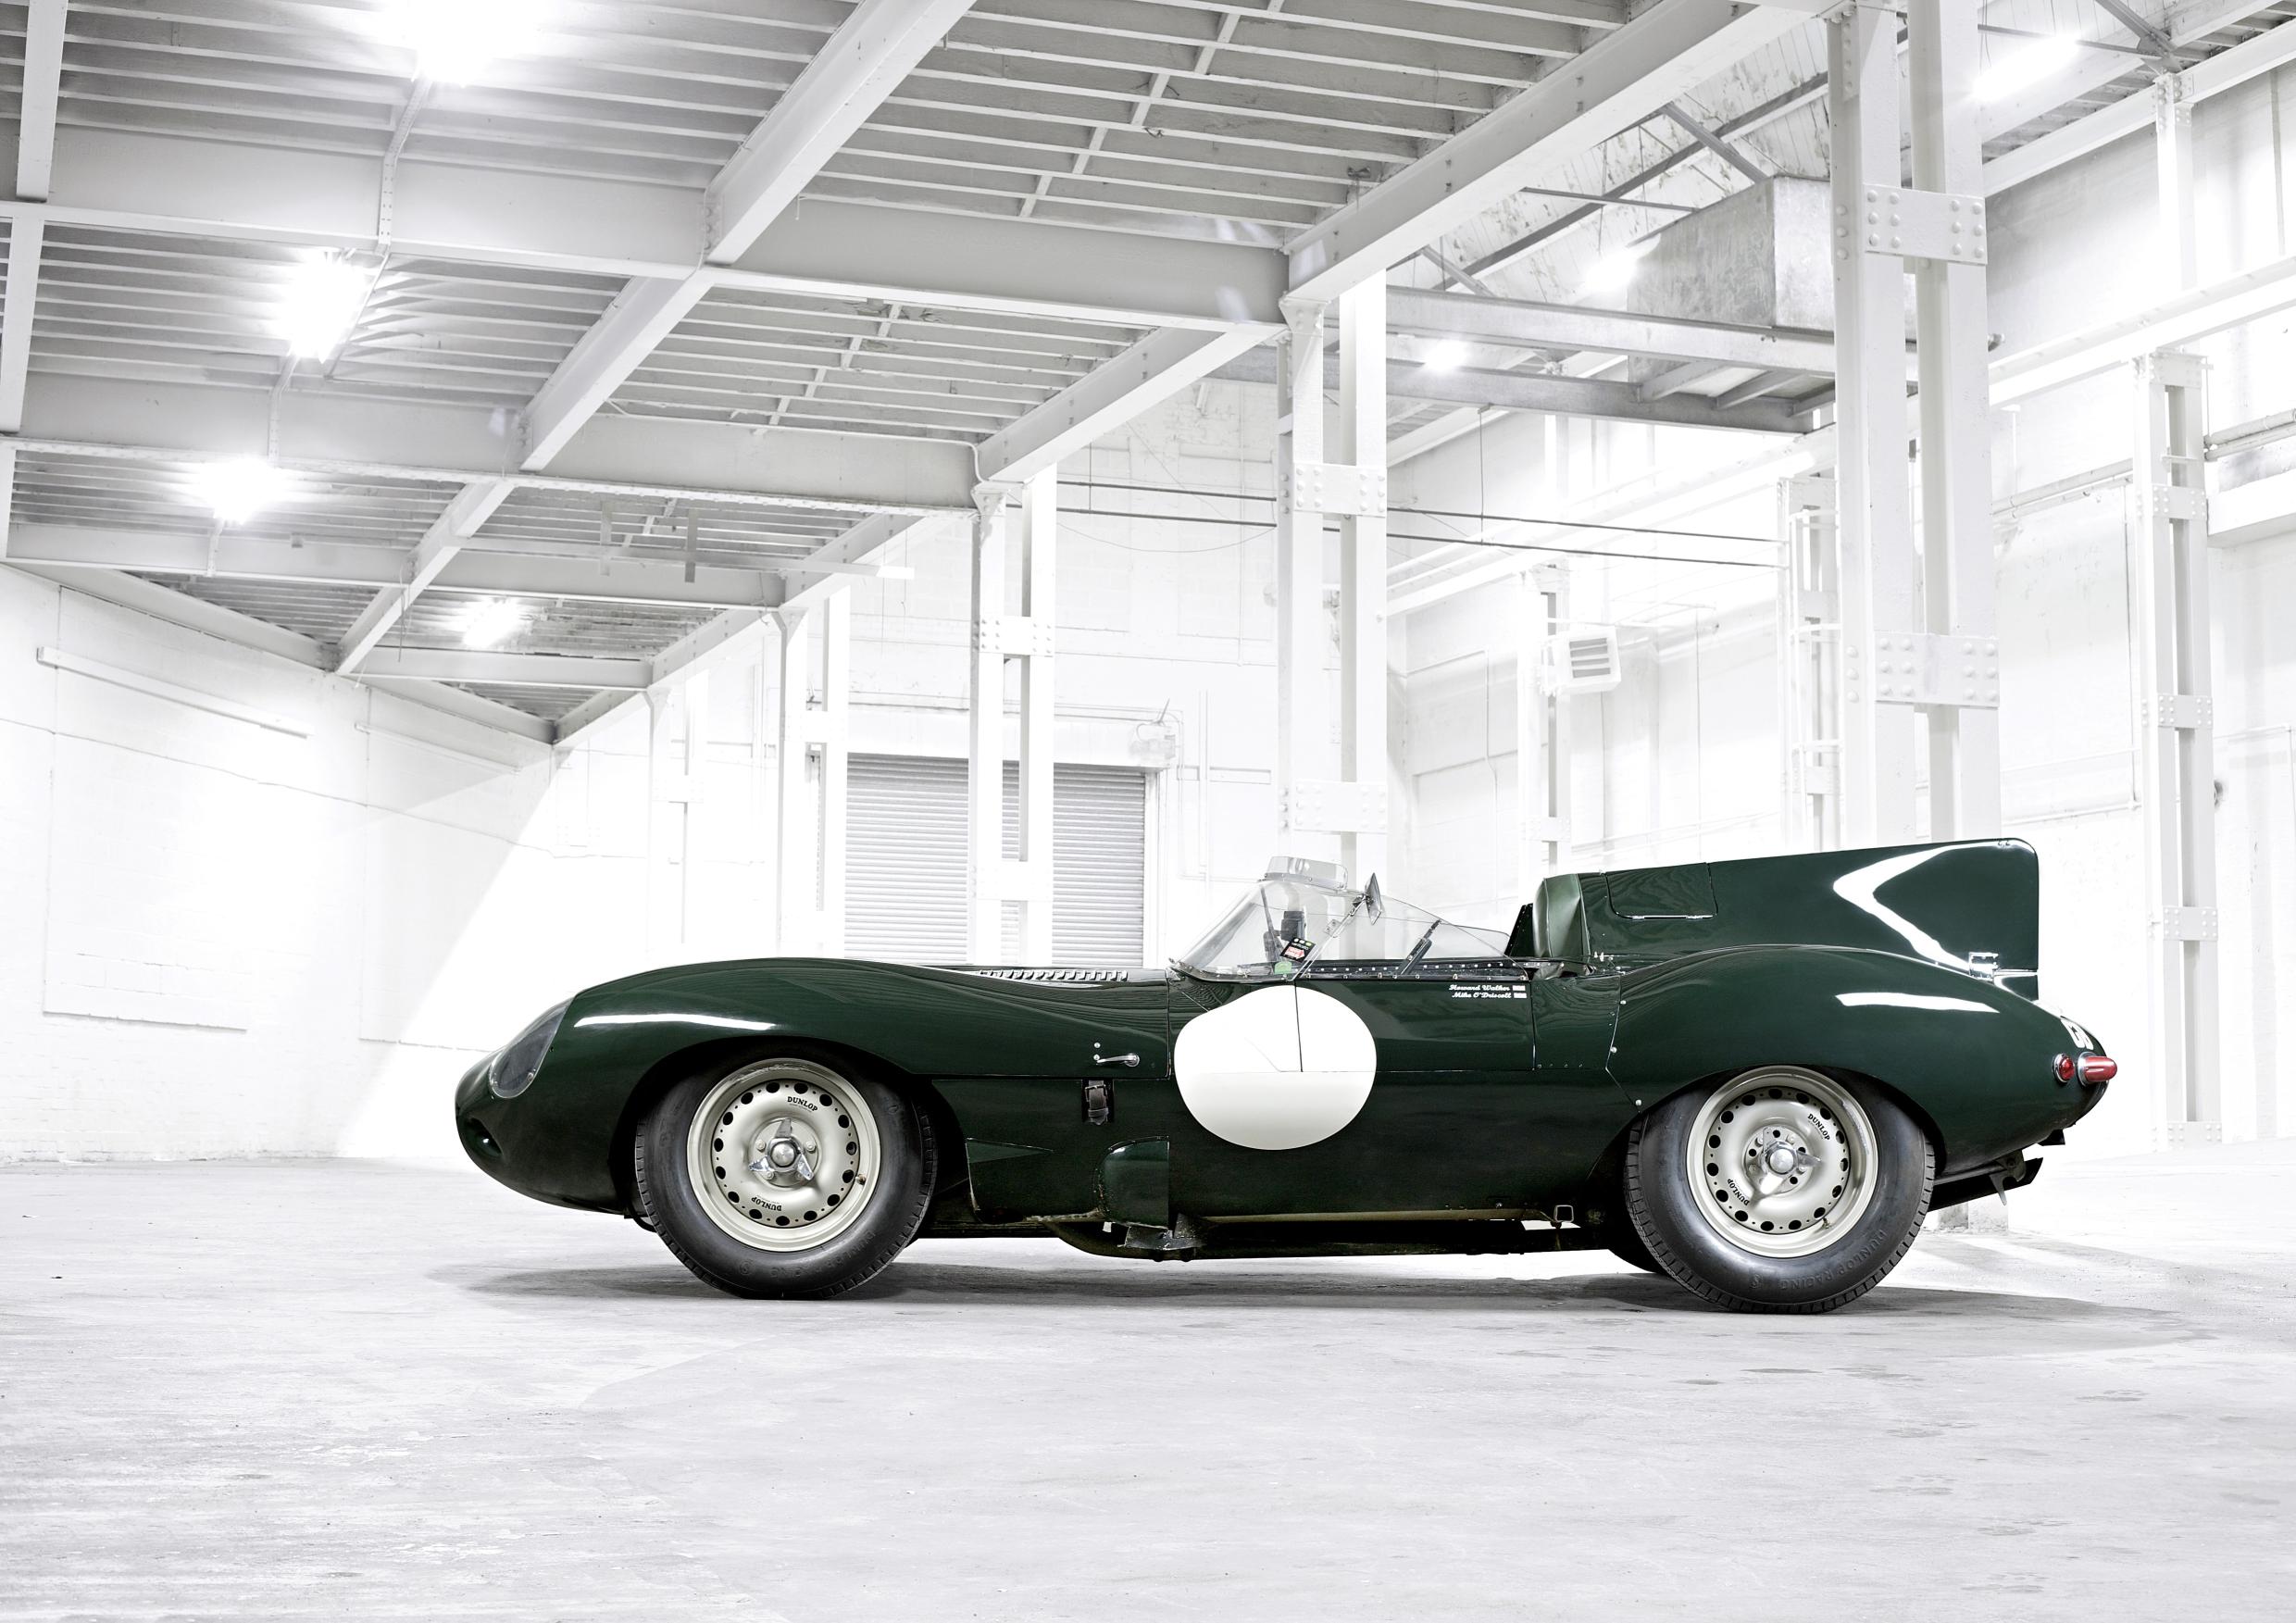 Jaguar ofrecerá al público conducir sus modelos clásicos más conocidos